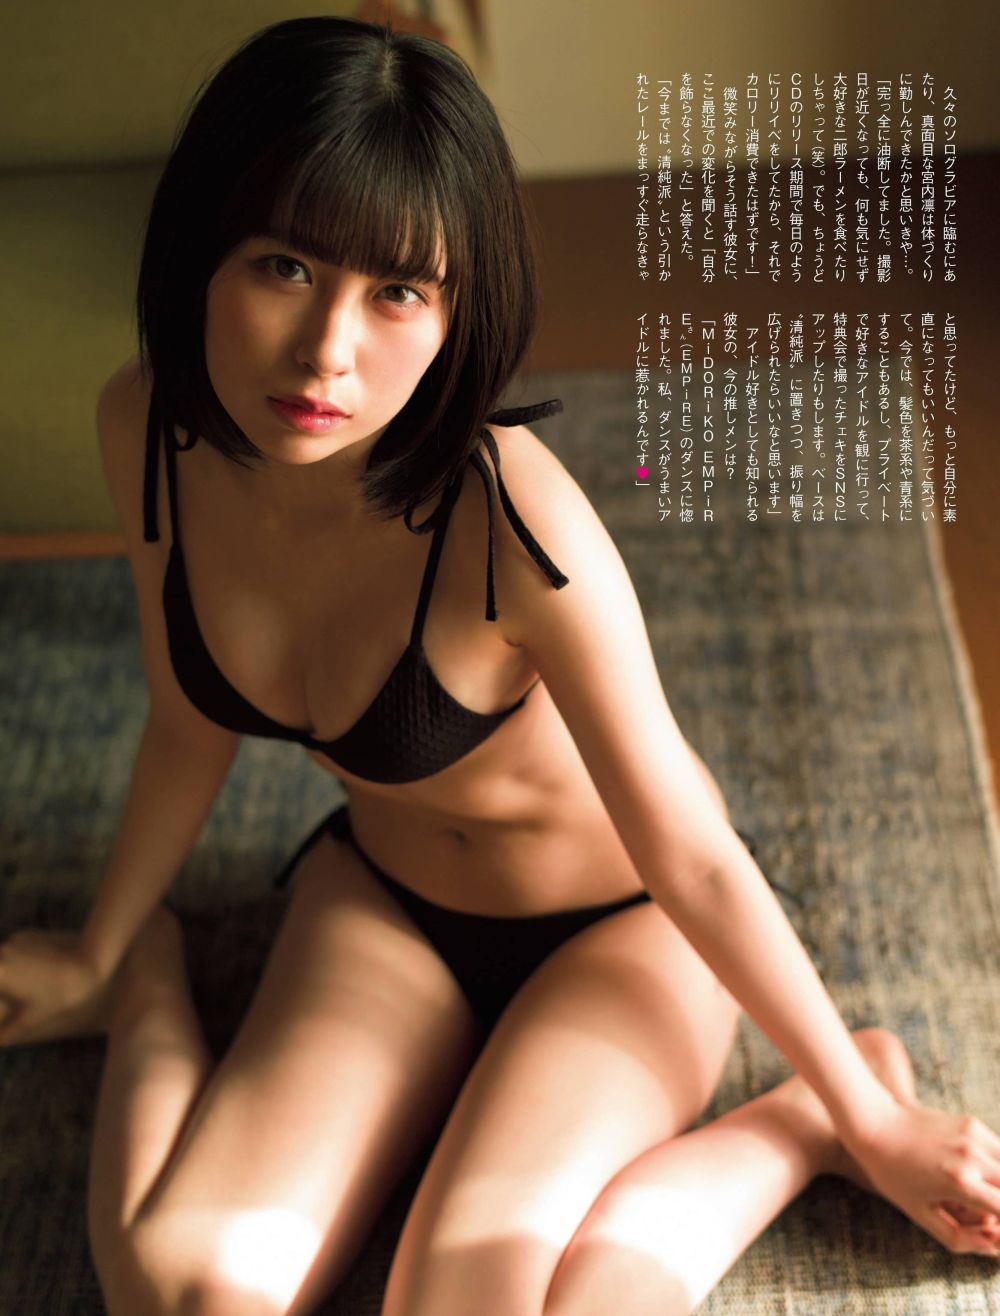 宫内凛 Sexy and Hottest Photos , Latest Pics